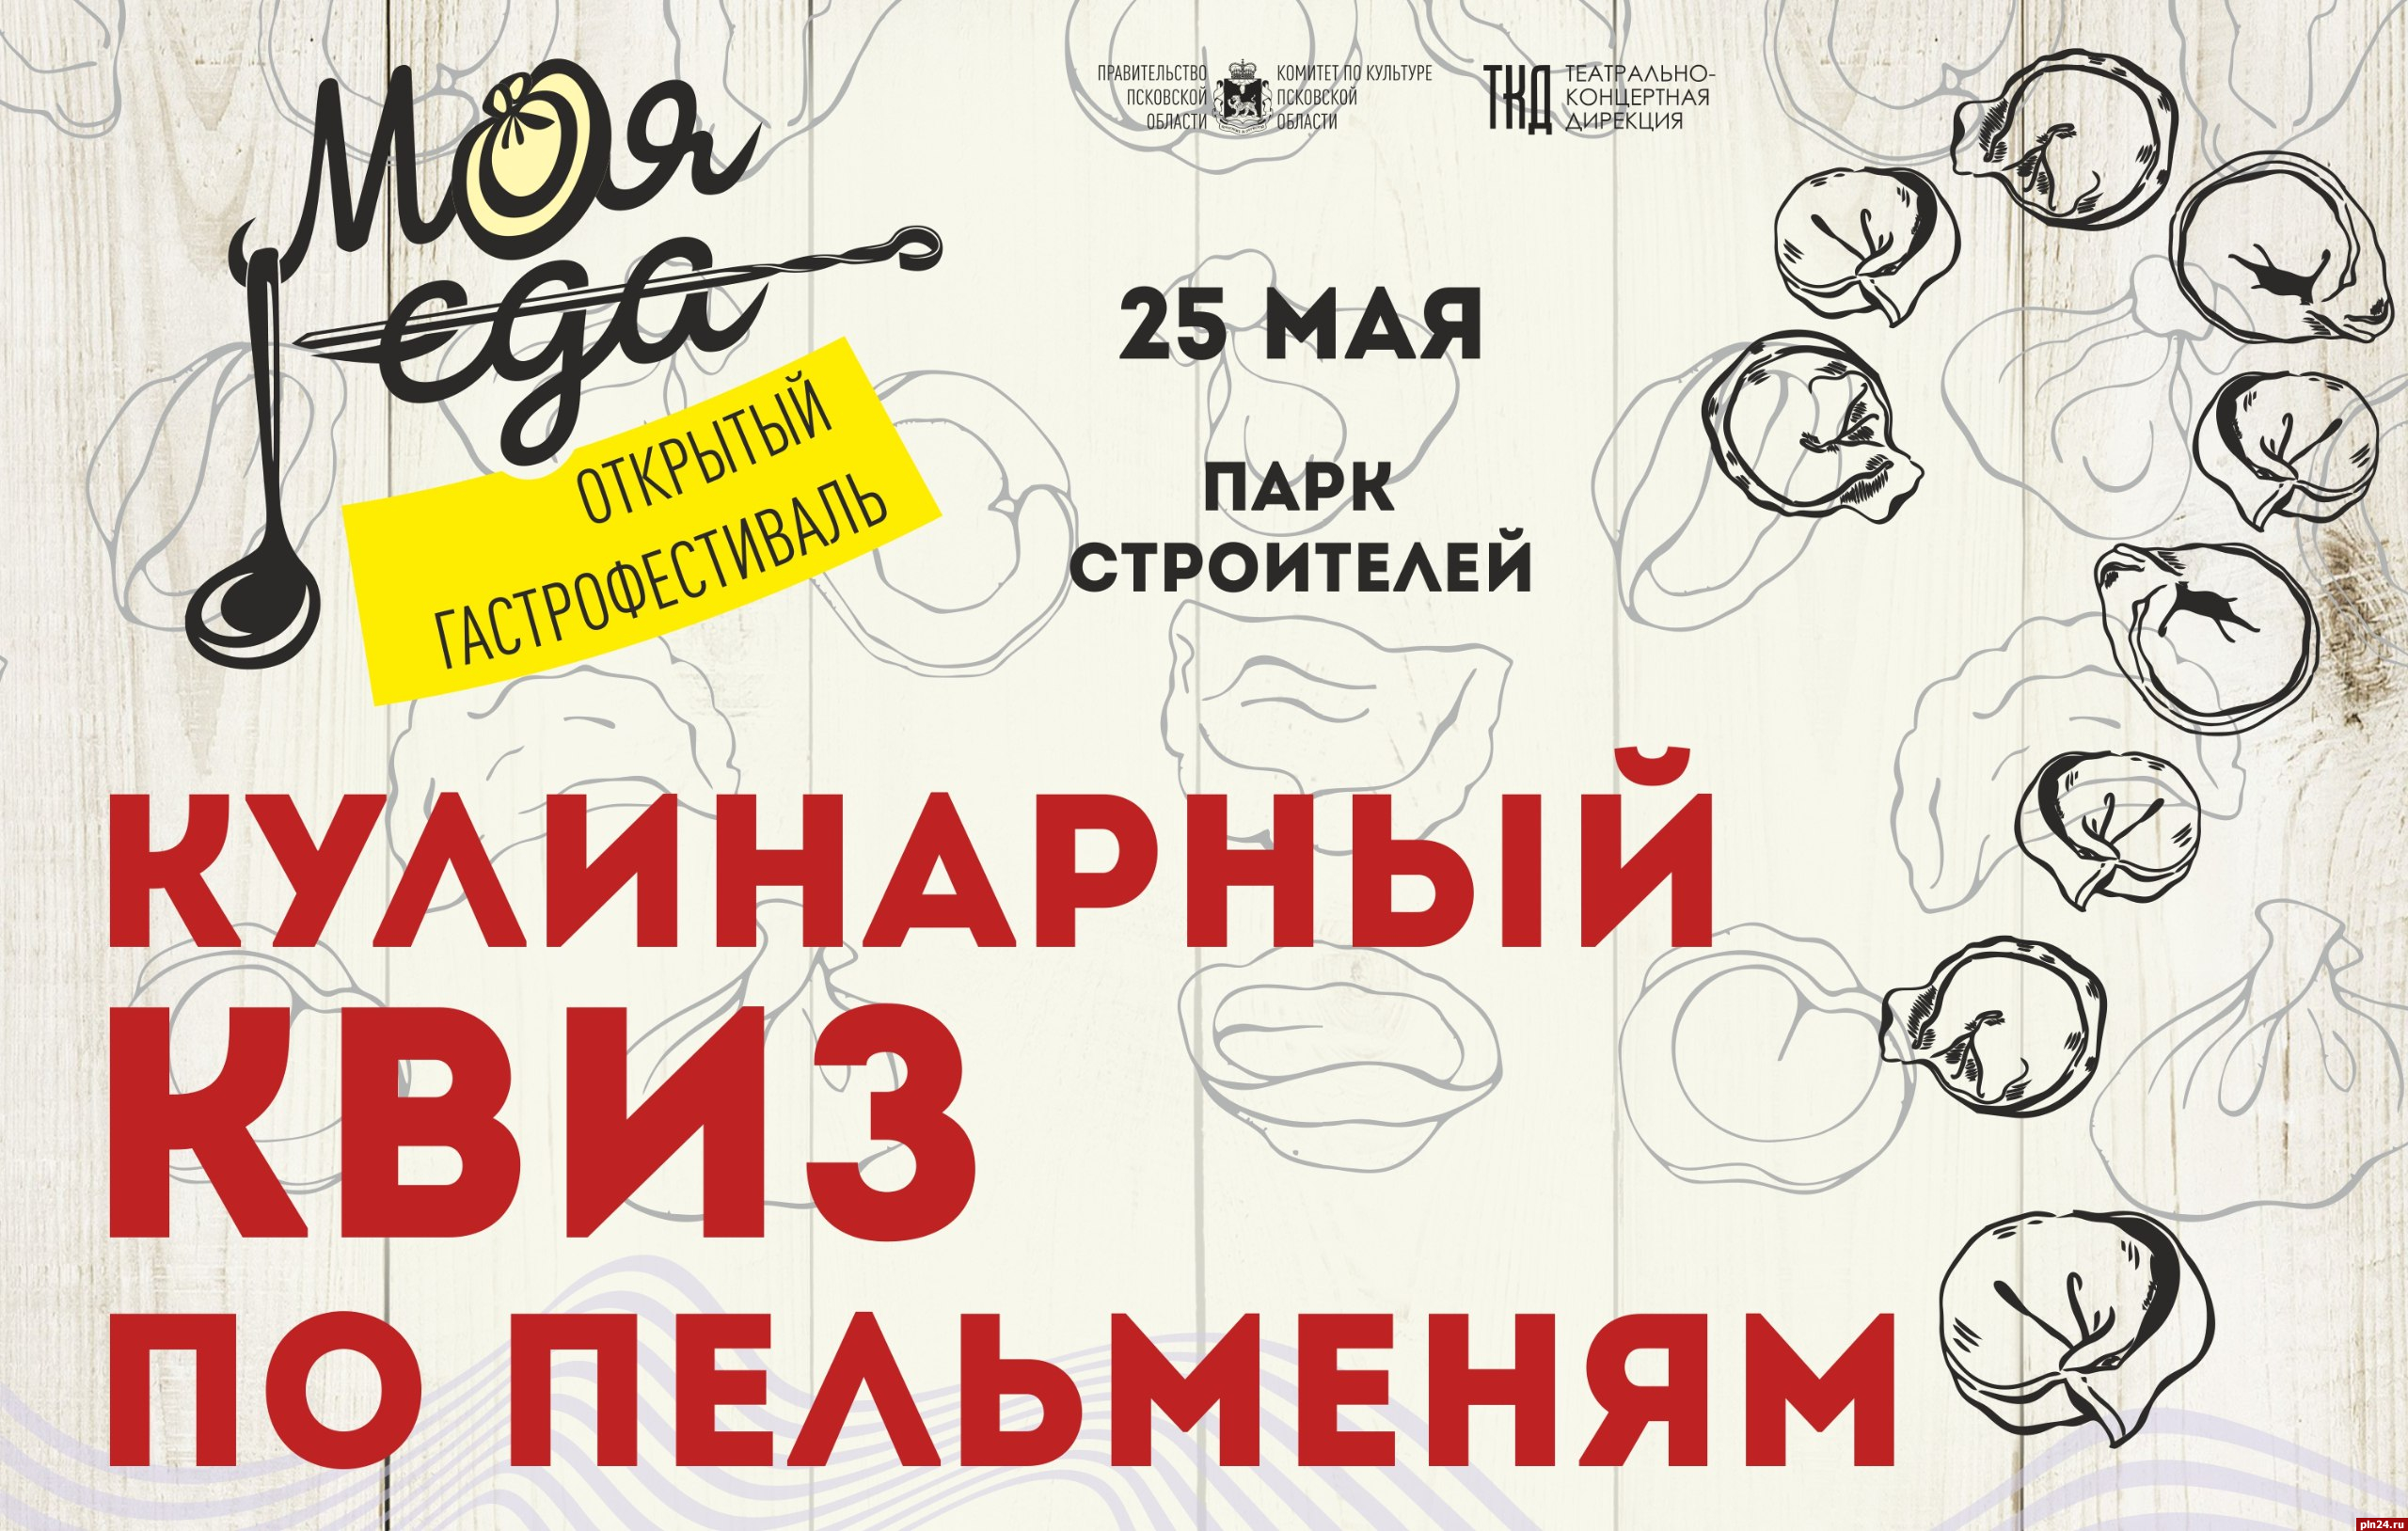 Кулинарно-пельменный квиз проведут для гостей псковского фестиваля «Моя еда»